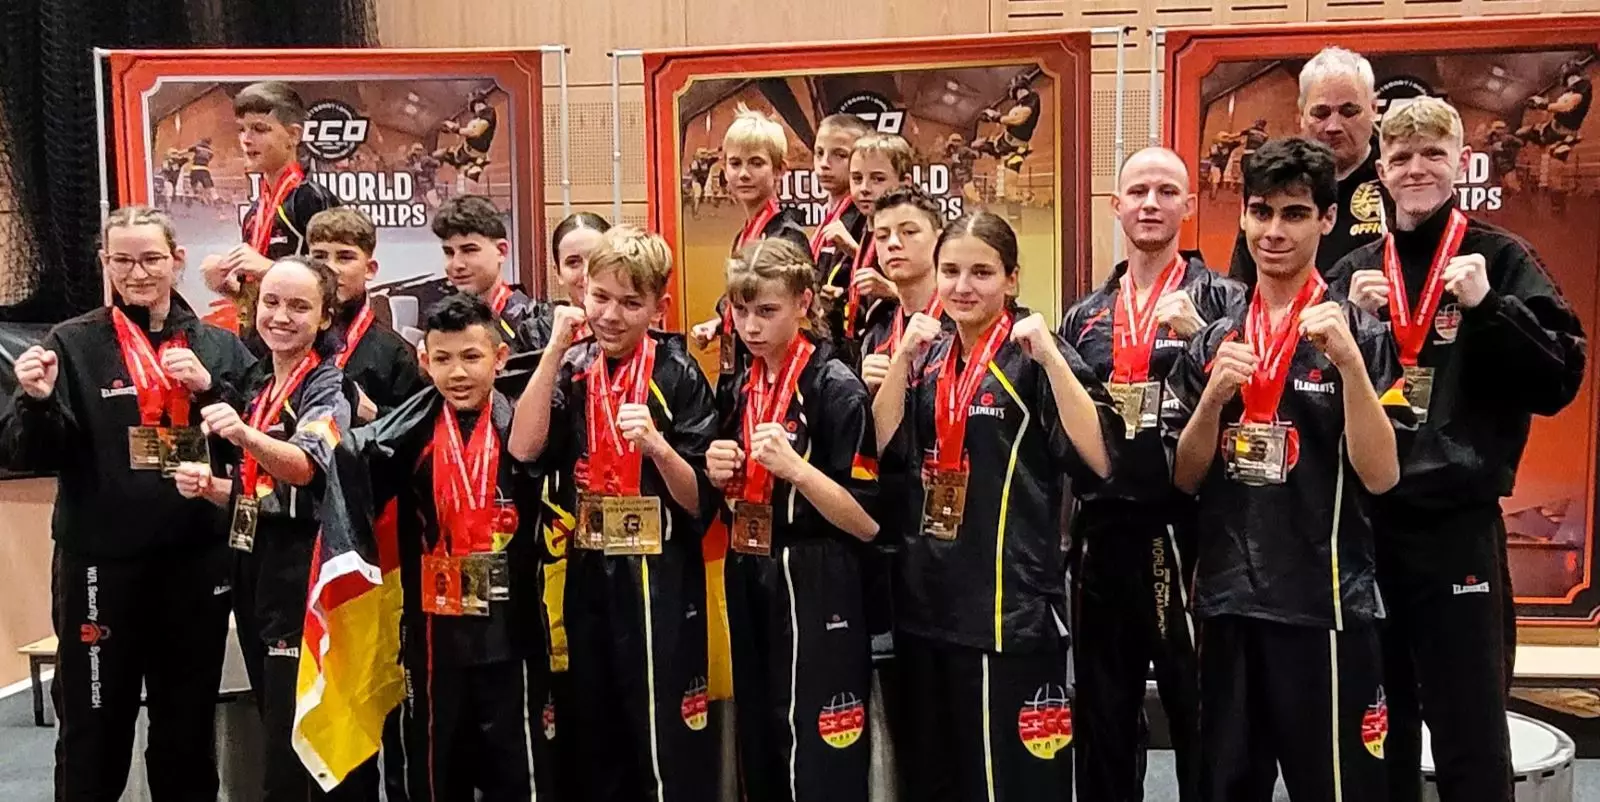 Das erfolgreiche Team Deutschland mit seinen Medaillen bei der ICO-Weltmeisterschaft. Foto: HNT